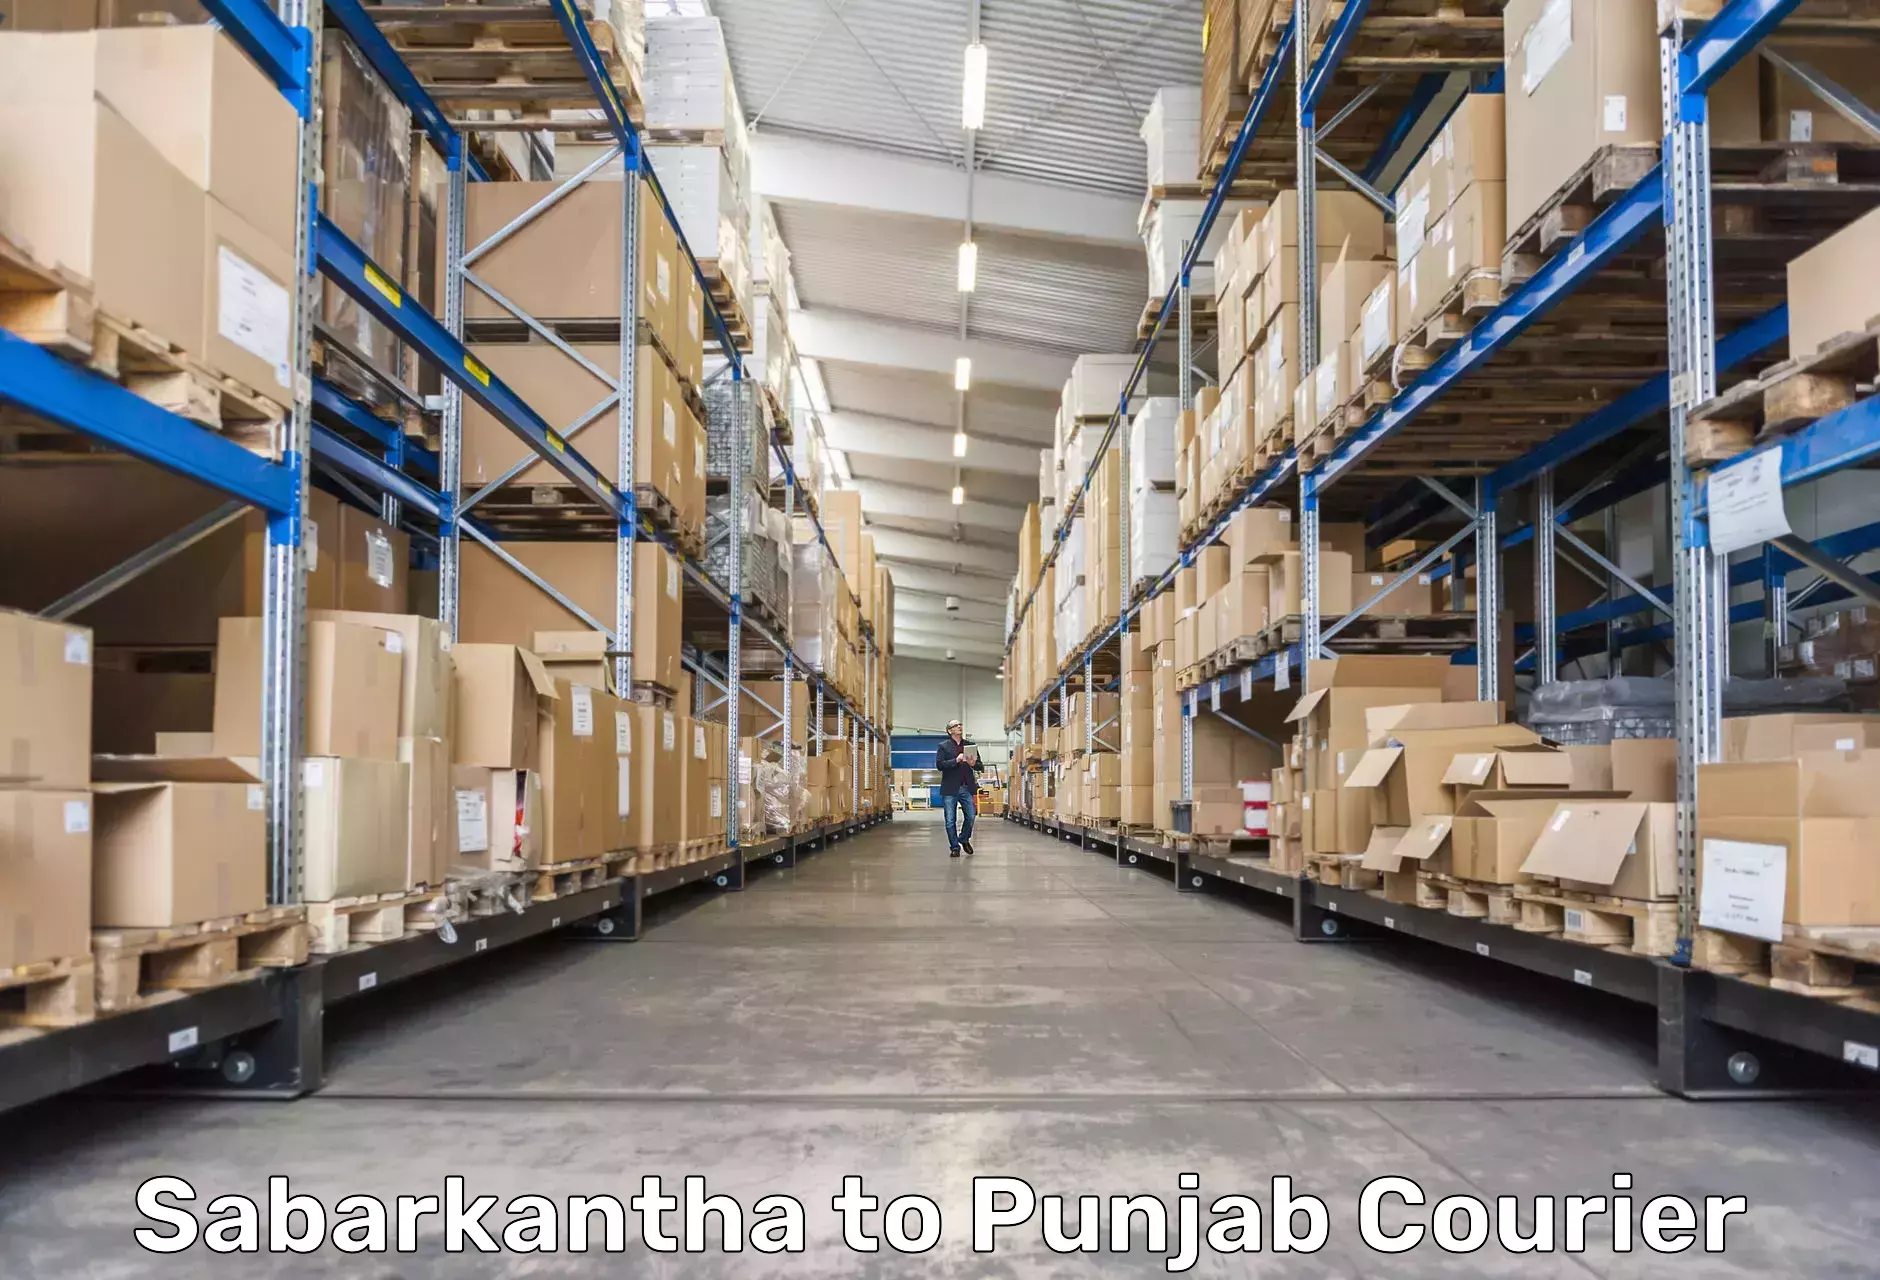 Affordable parcel service Sabarkantha to Punjab